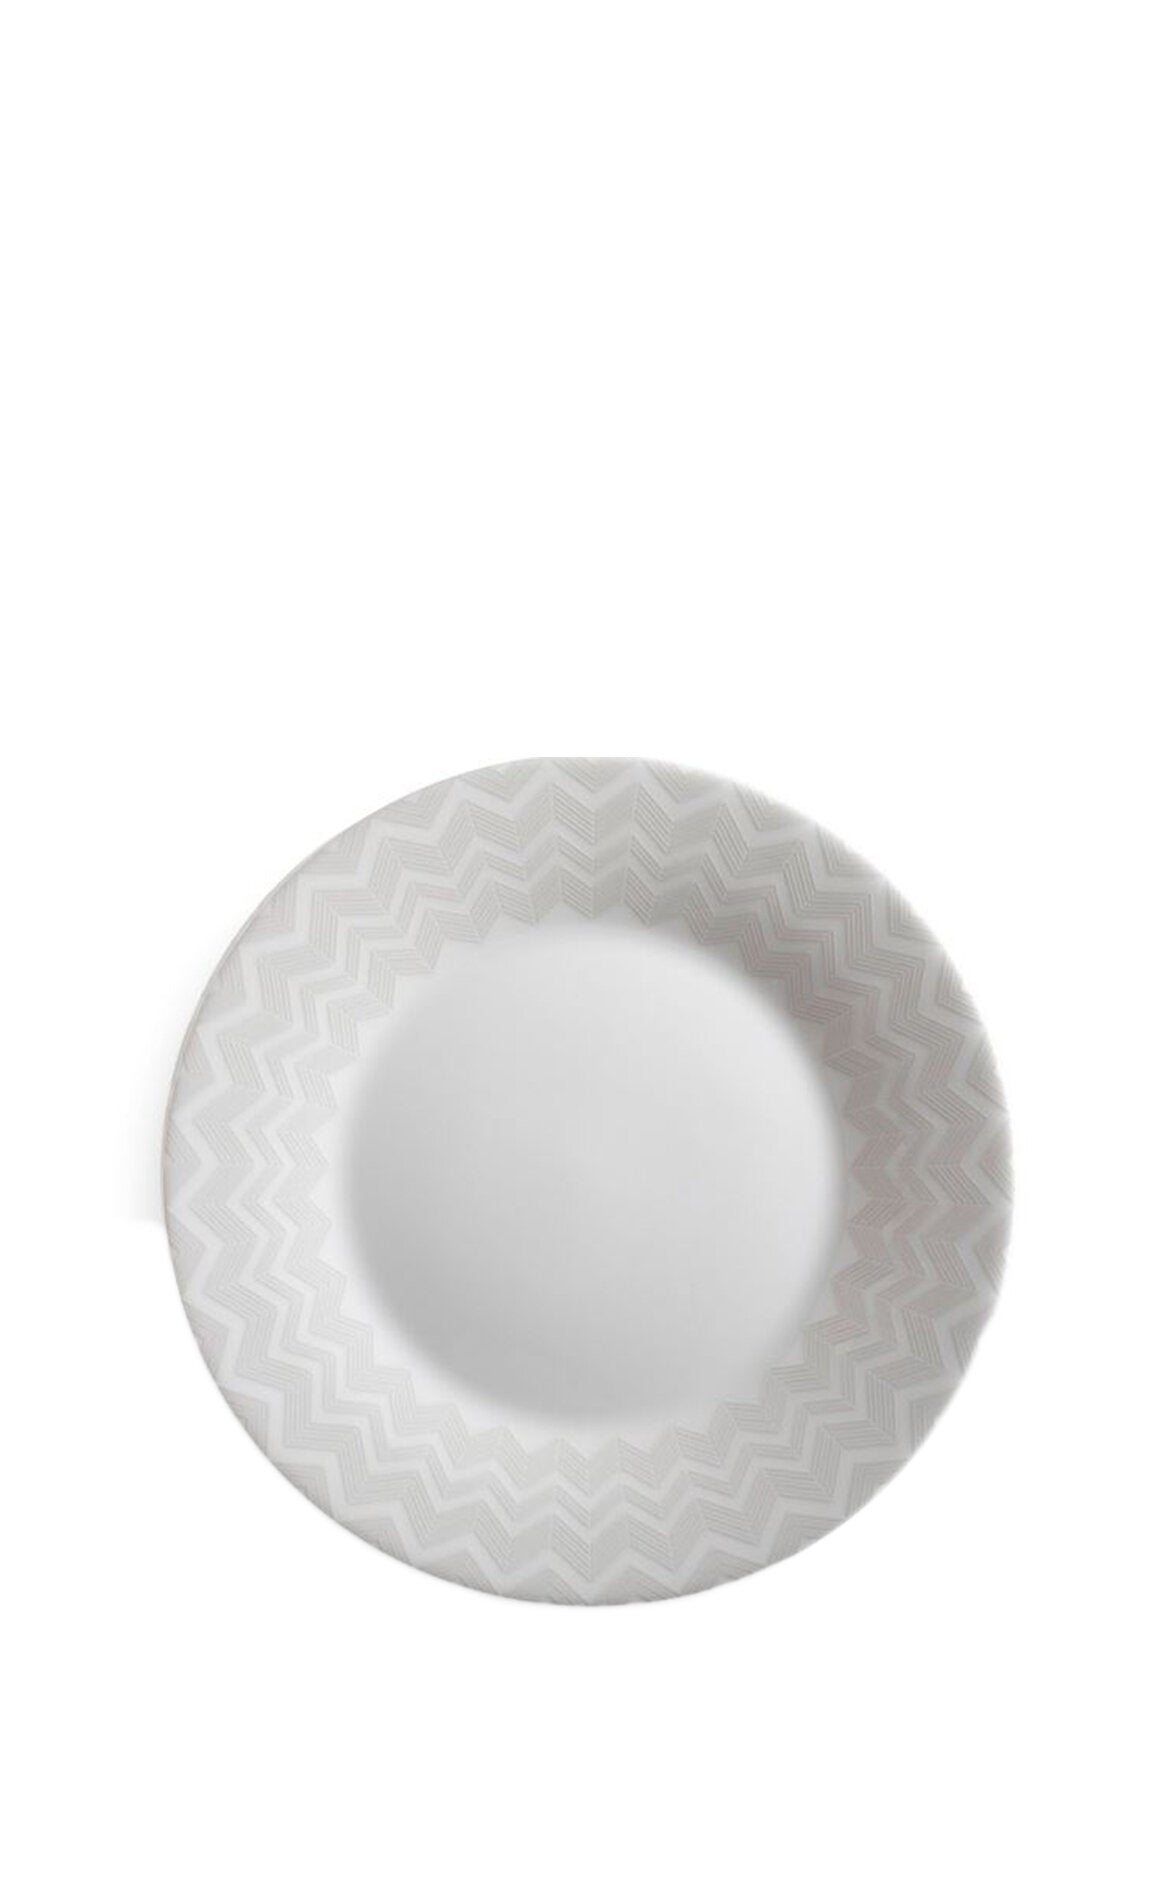 MISSONI HOME Zig Zag White Beyaz Gri, Pasta Tabağı 21,5 cm D’Maison 